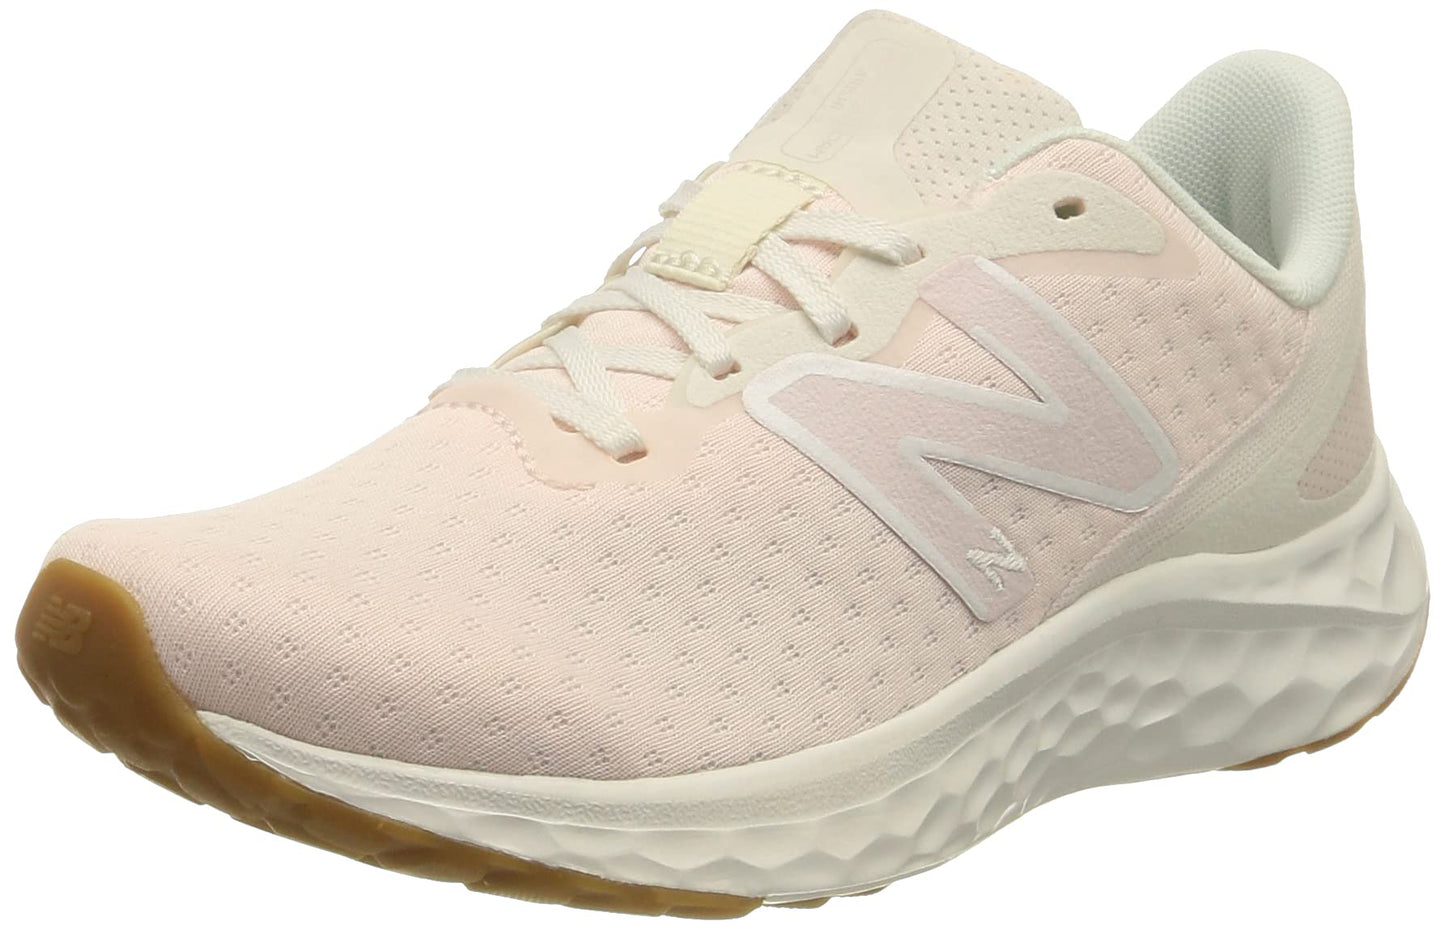 New Balance Women's Fresh Foam Arishi V4 Running Shoe, Washed Pink/Gum, 5.5